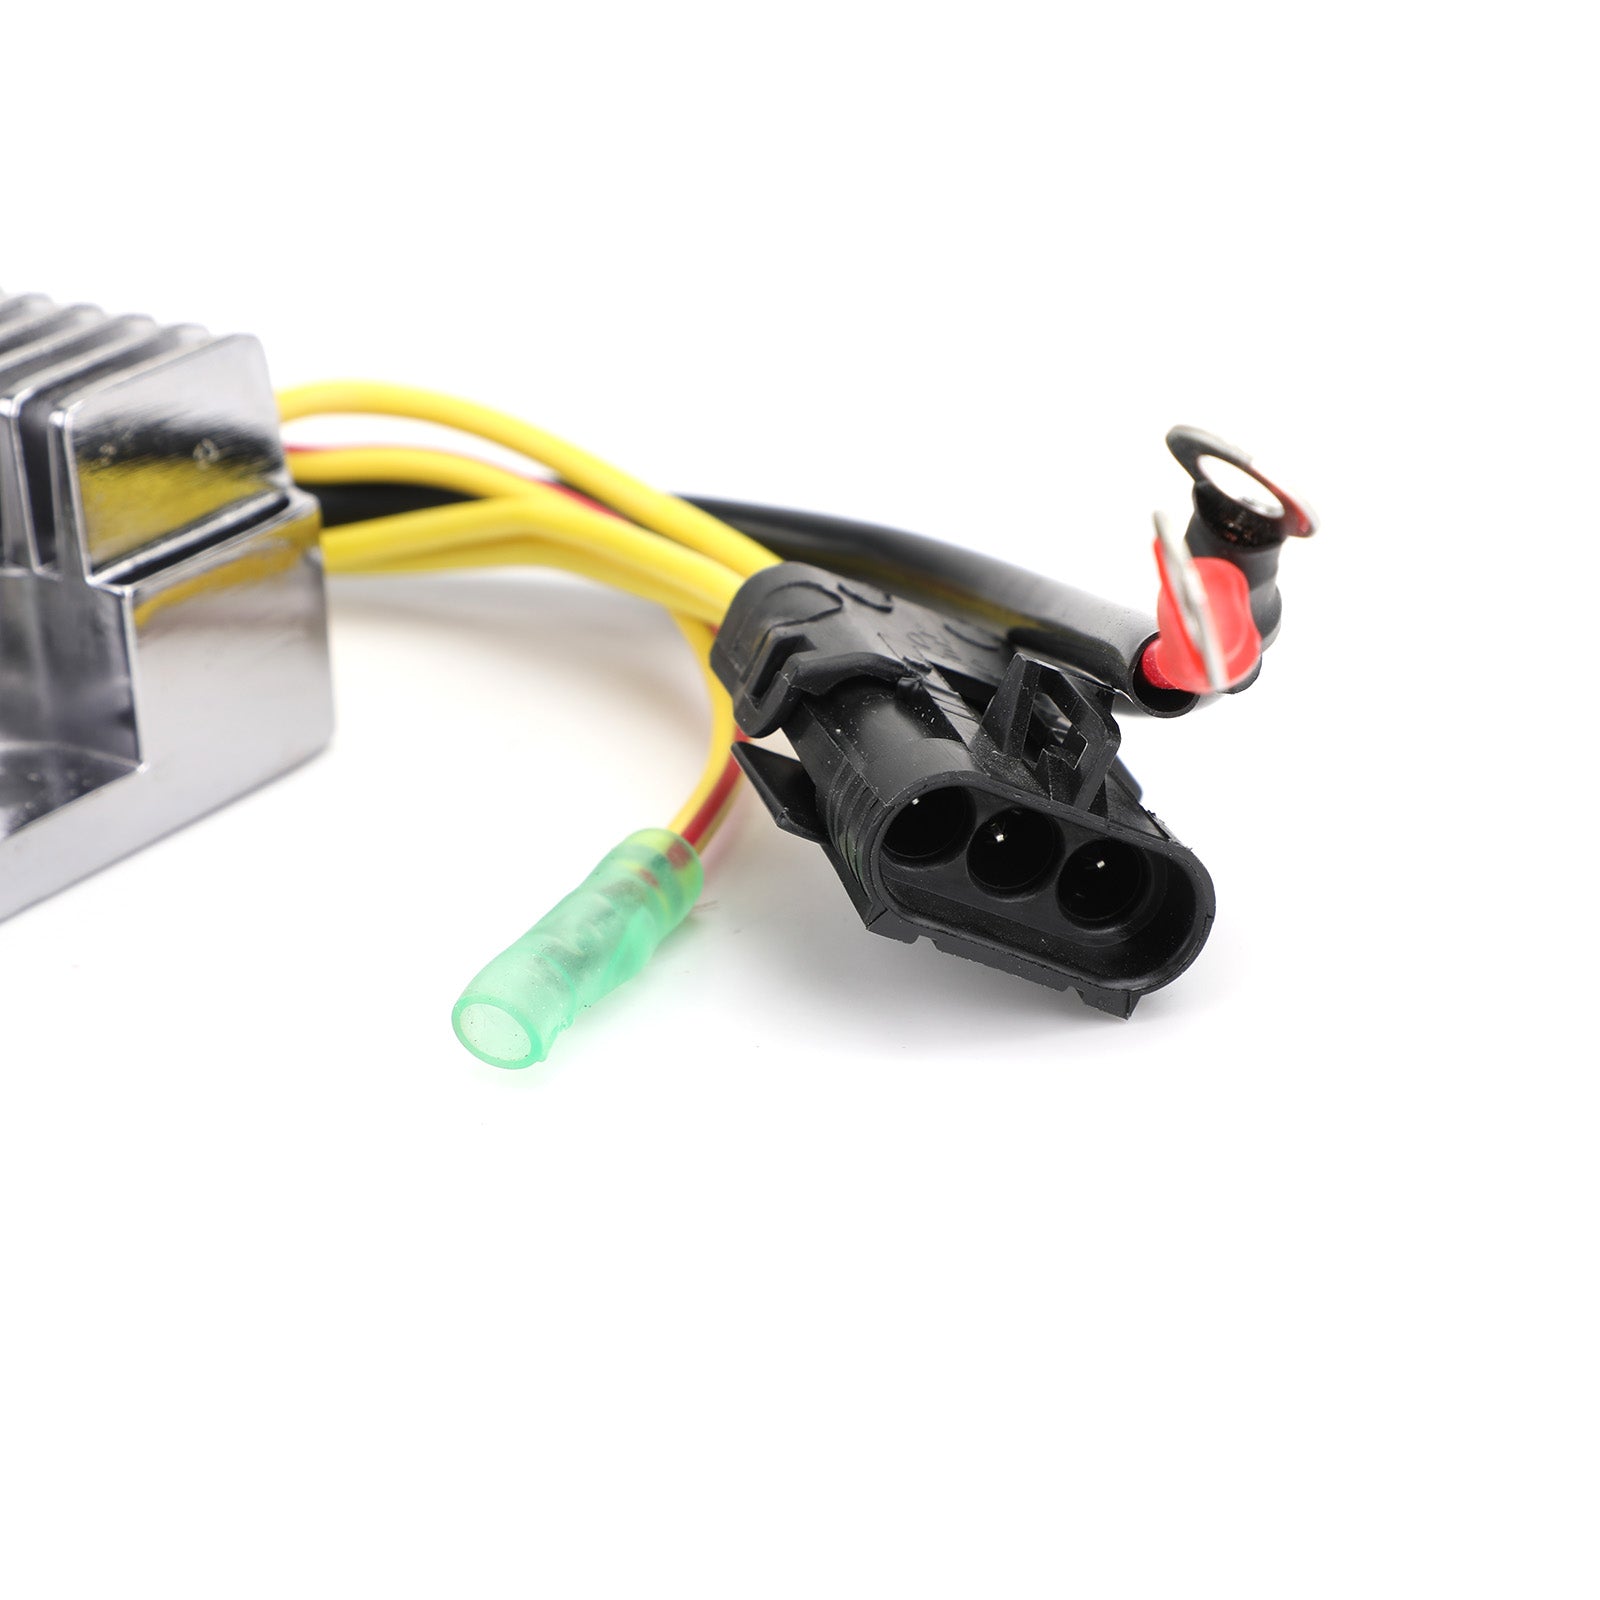 Regulador rectificador de voltaje para Polaris Sportsman / Hawkeye 300 06-11 #.4011182